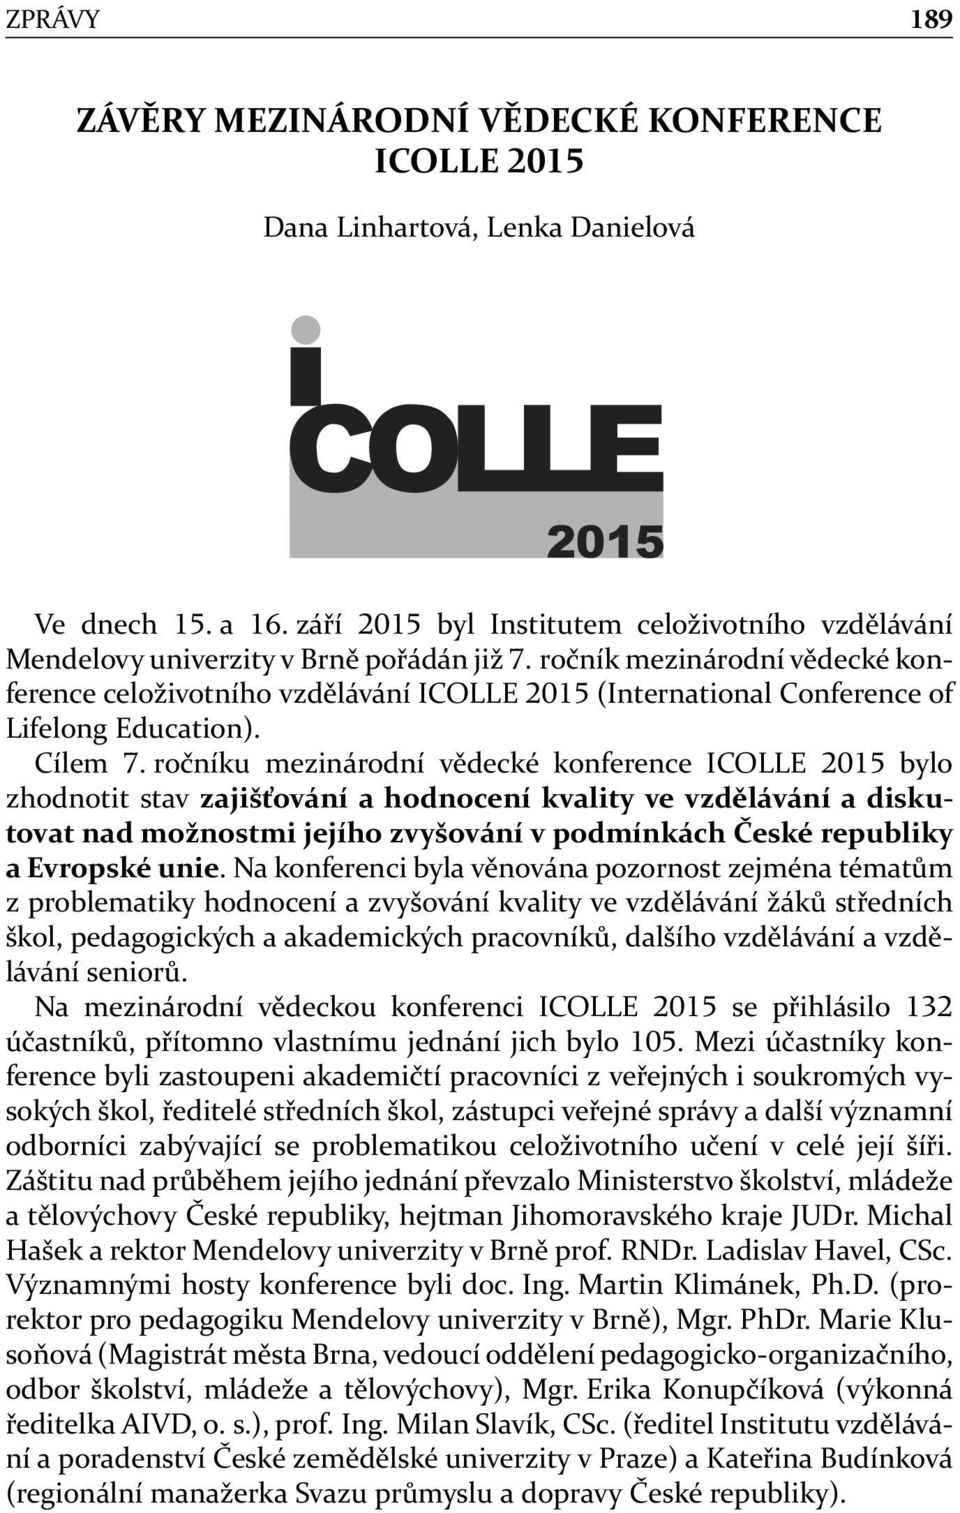 ročníku mezinárodní vědecké konference ICOLLE bylo zhodnotit stav zajišťování a hodnocení kvality ve vzdělávání a diskutovat nad možnostmi jejího zvyšování v podmínkách České republiky a Evropské